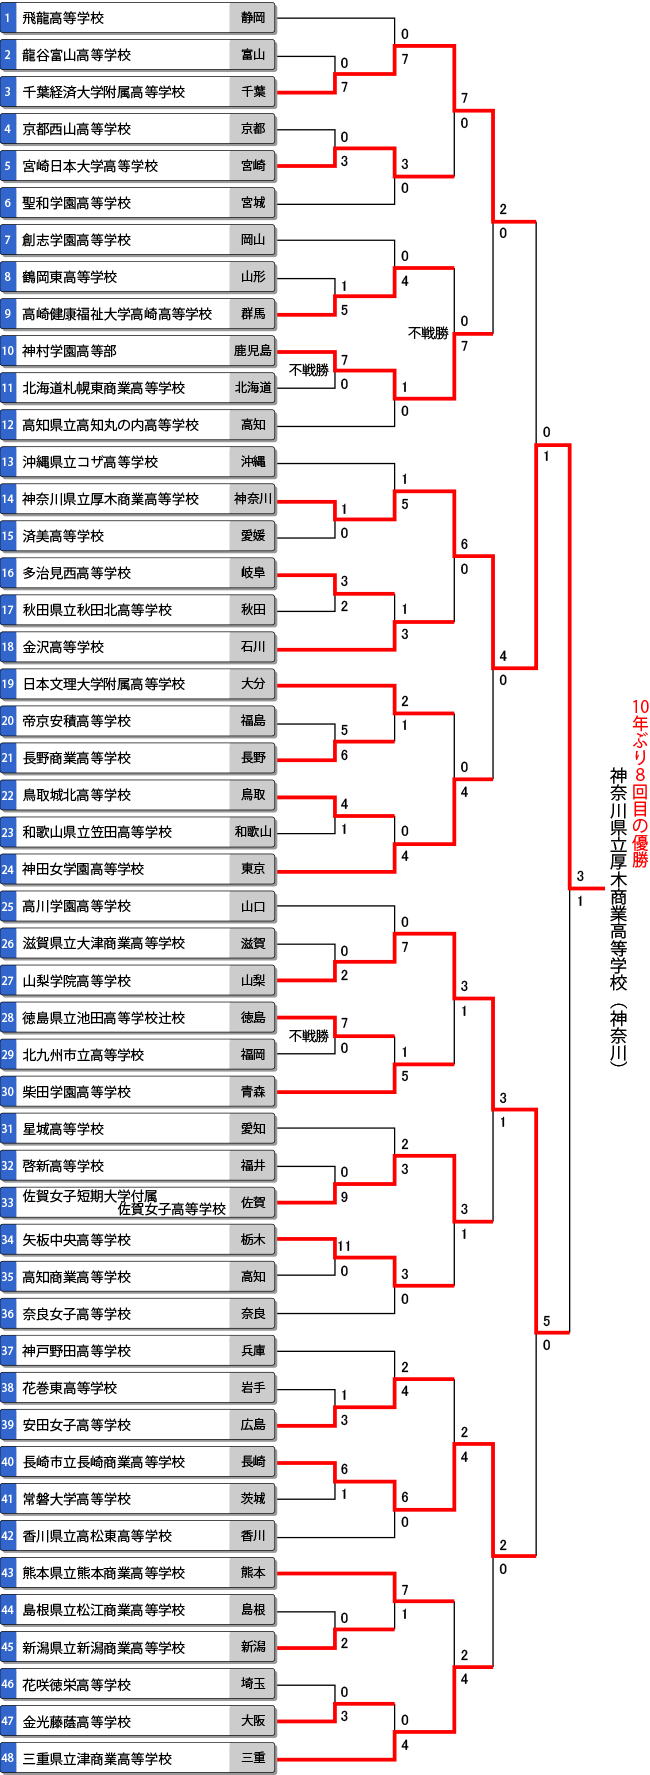 第74回全日本高校女子選手権（全国高校総体/インターハイ）トーナメント表